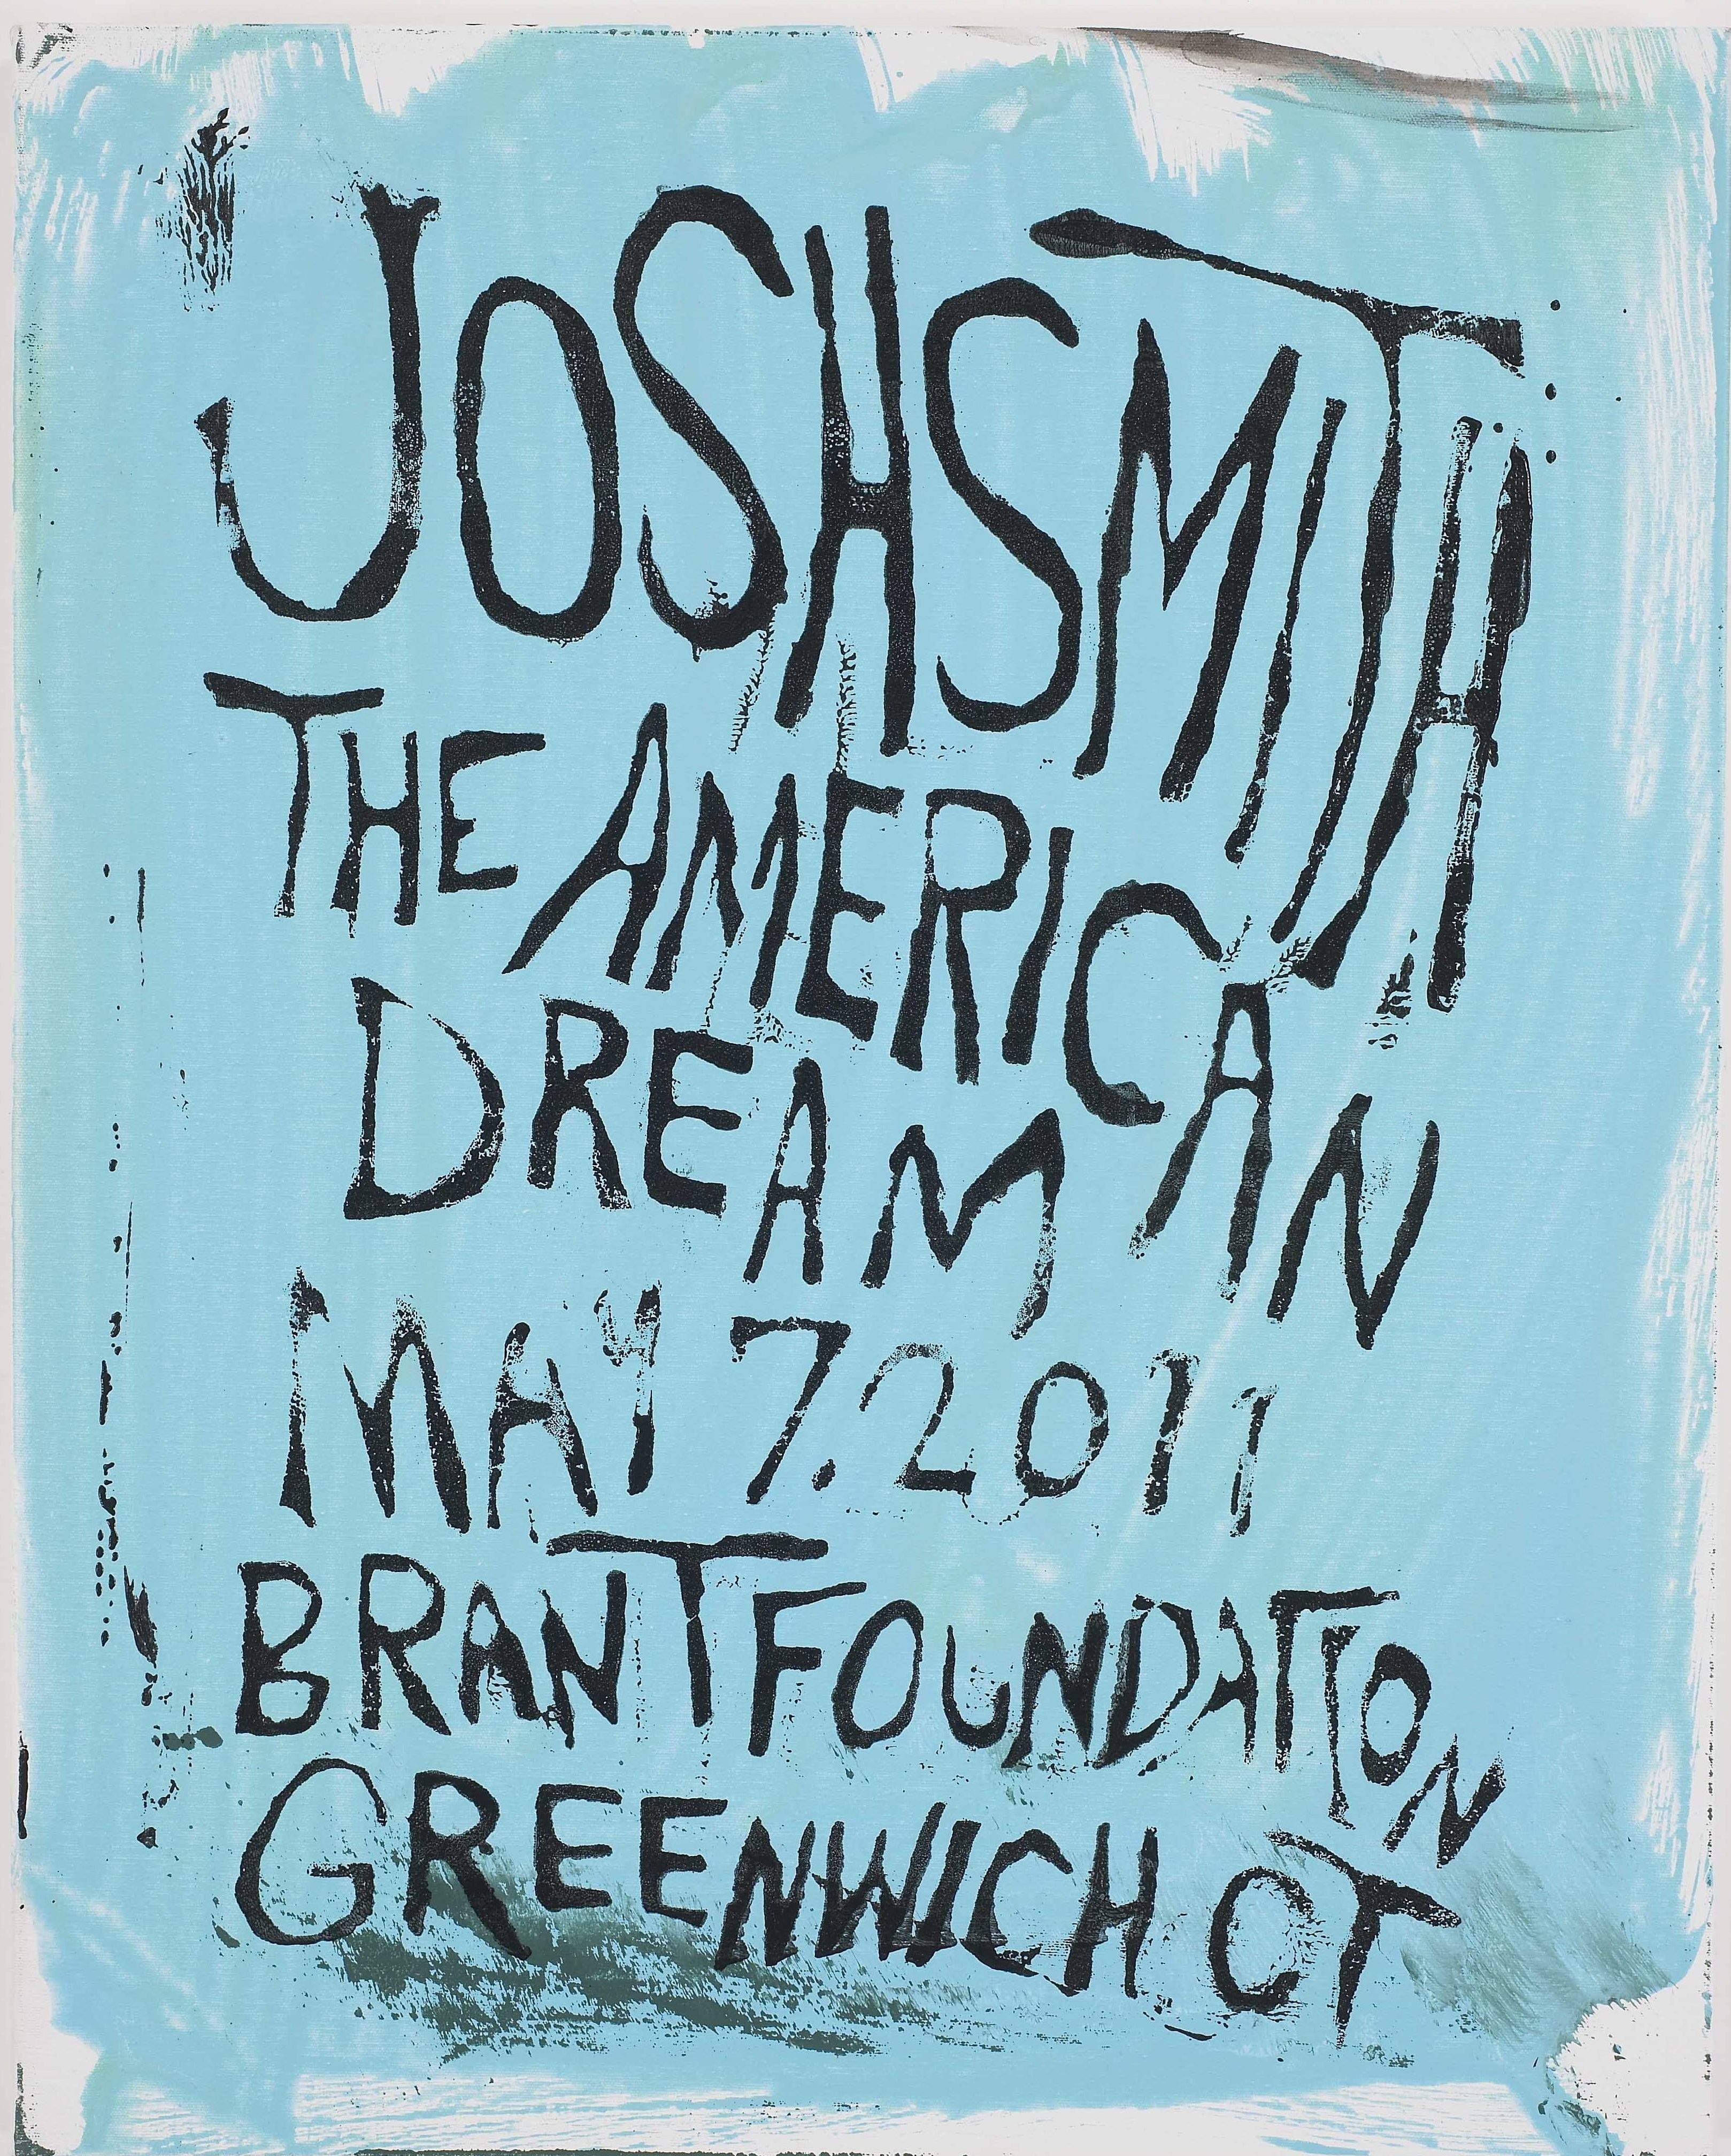 Josh Smith - The American Dream Exhibition - The Brant Foundation